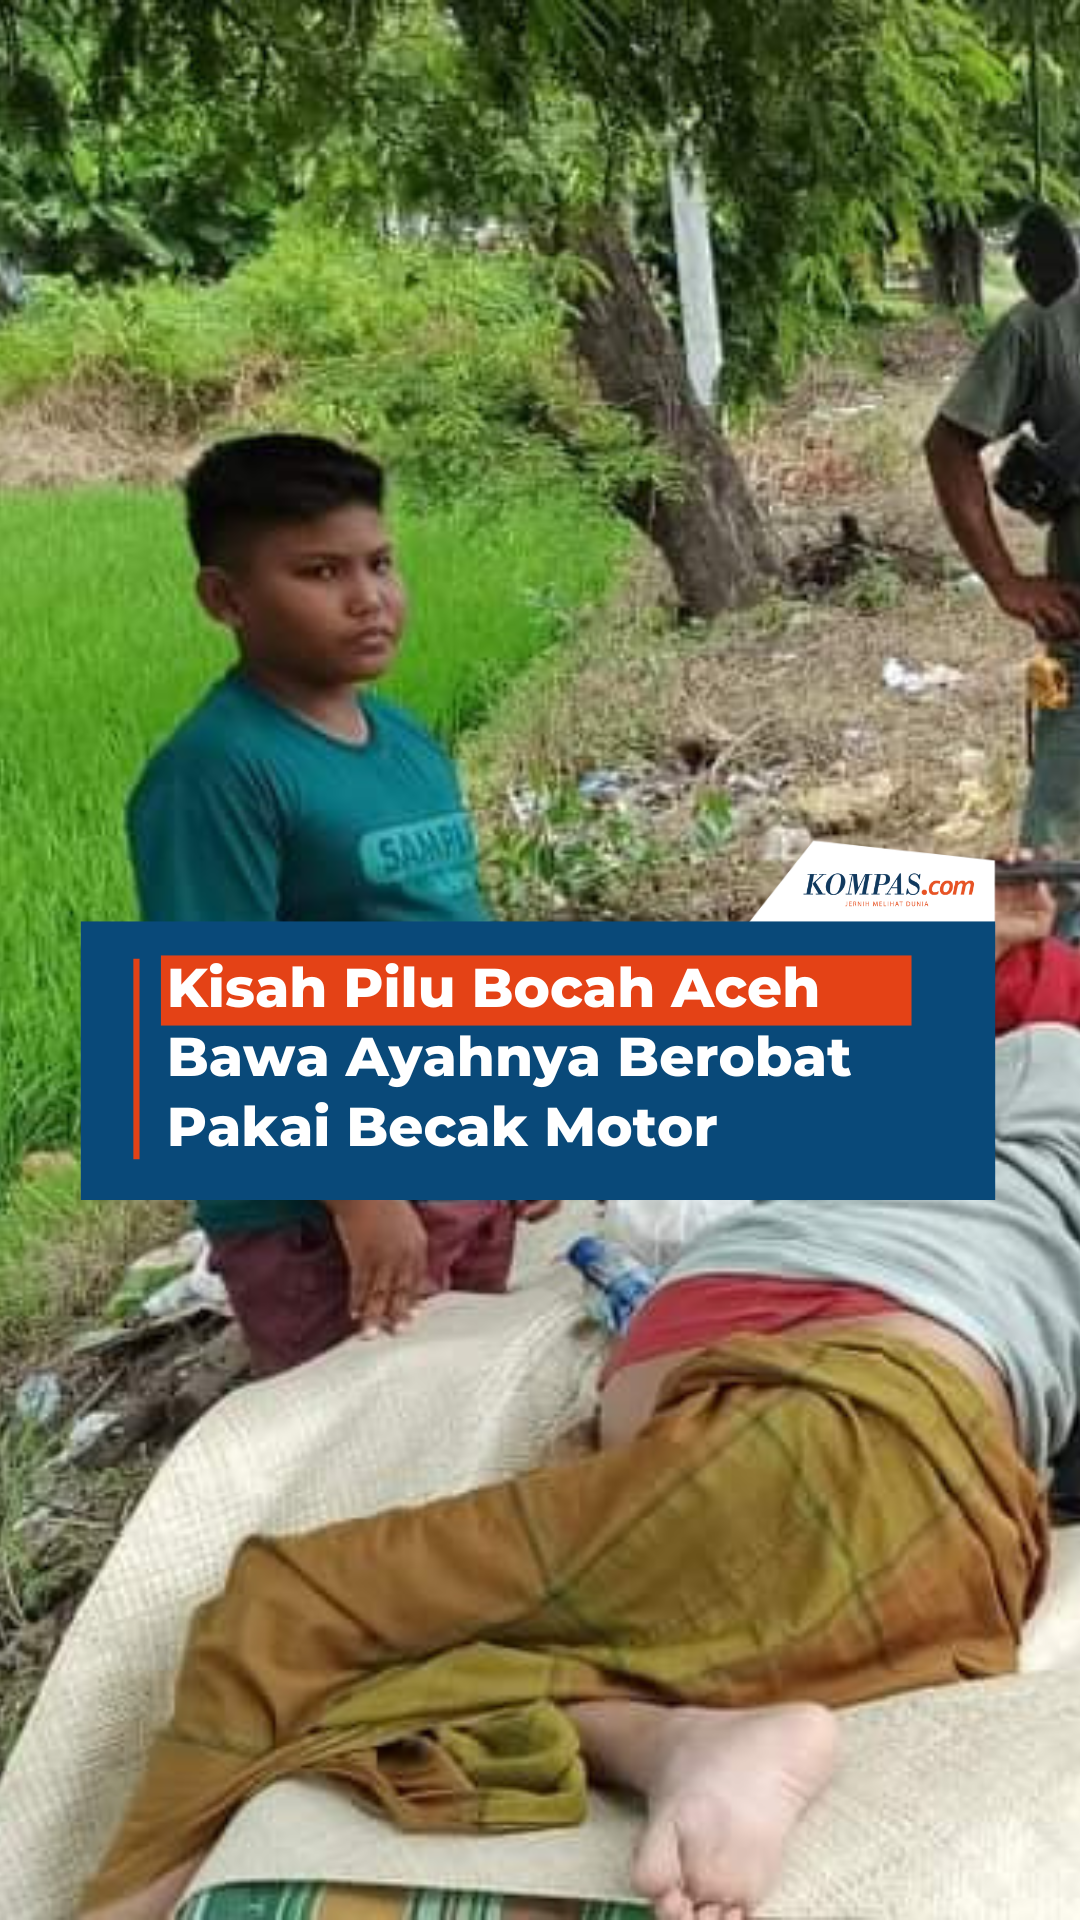 Kisah Pilu Bocah Aceh Bawa Ayahnya Berobat Pakai Becak Motor